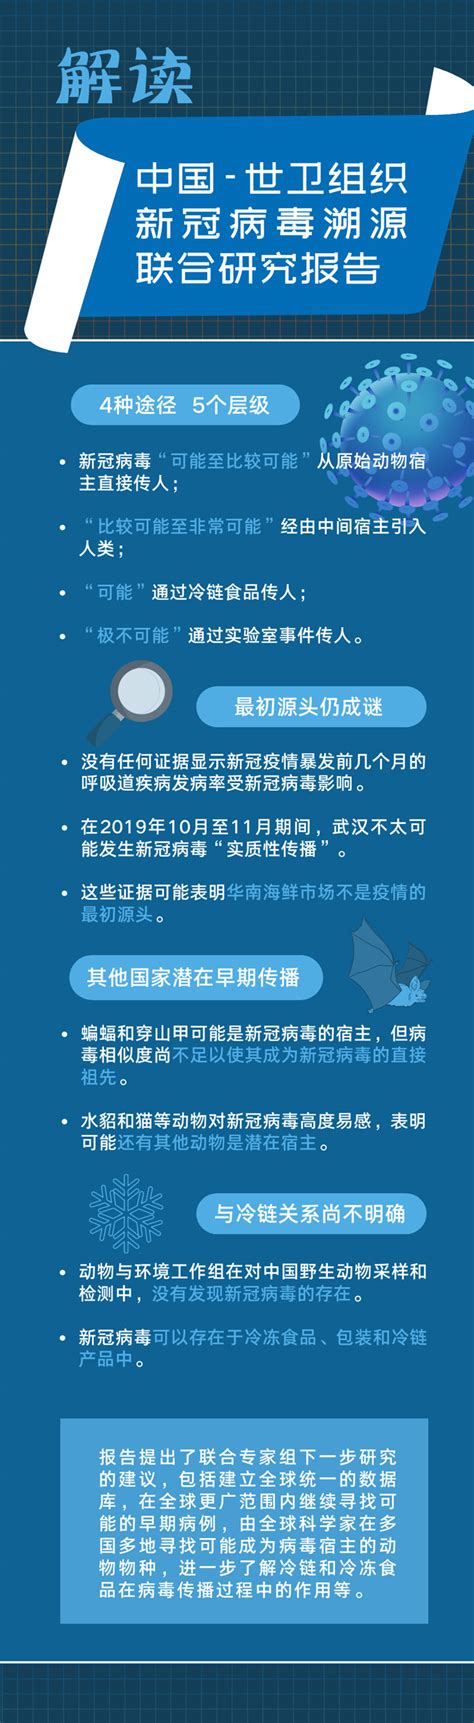 一图读懂中国-世卫组织新冠病毒溯源联合研究报告要点_中国山东网